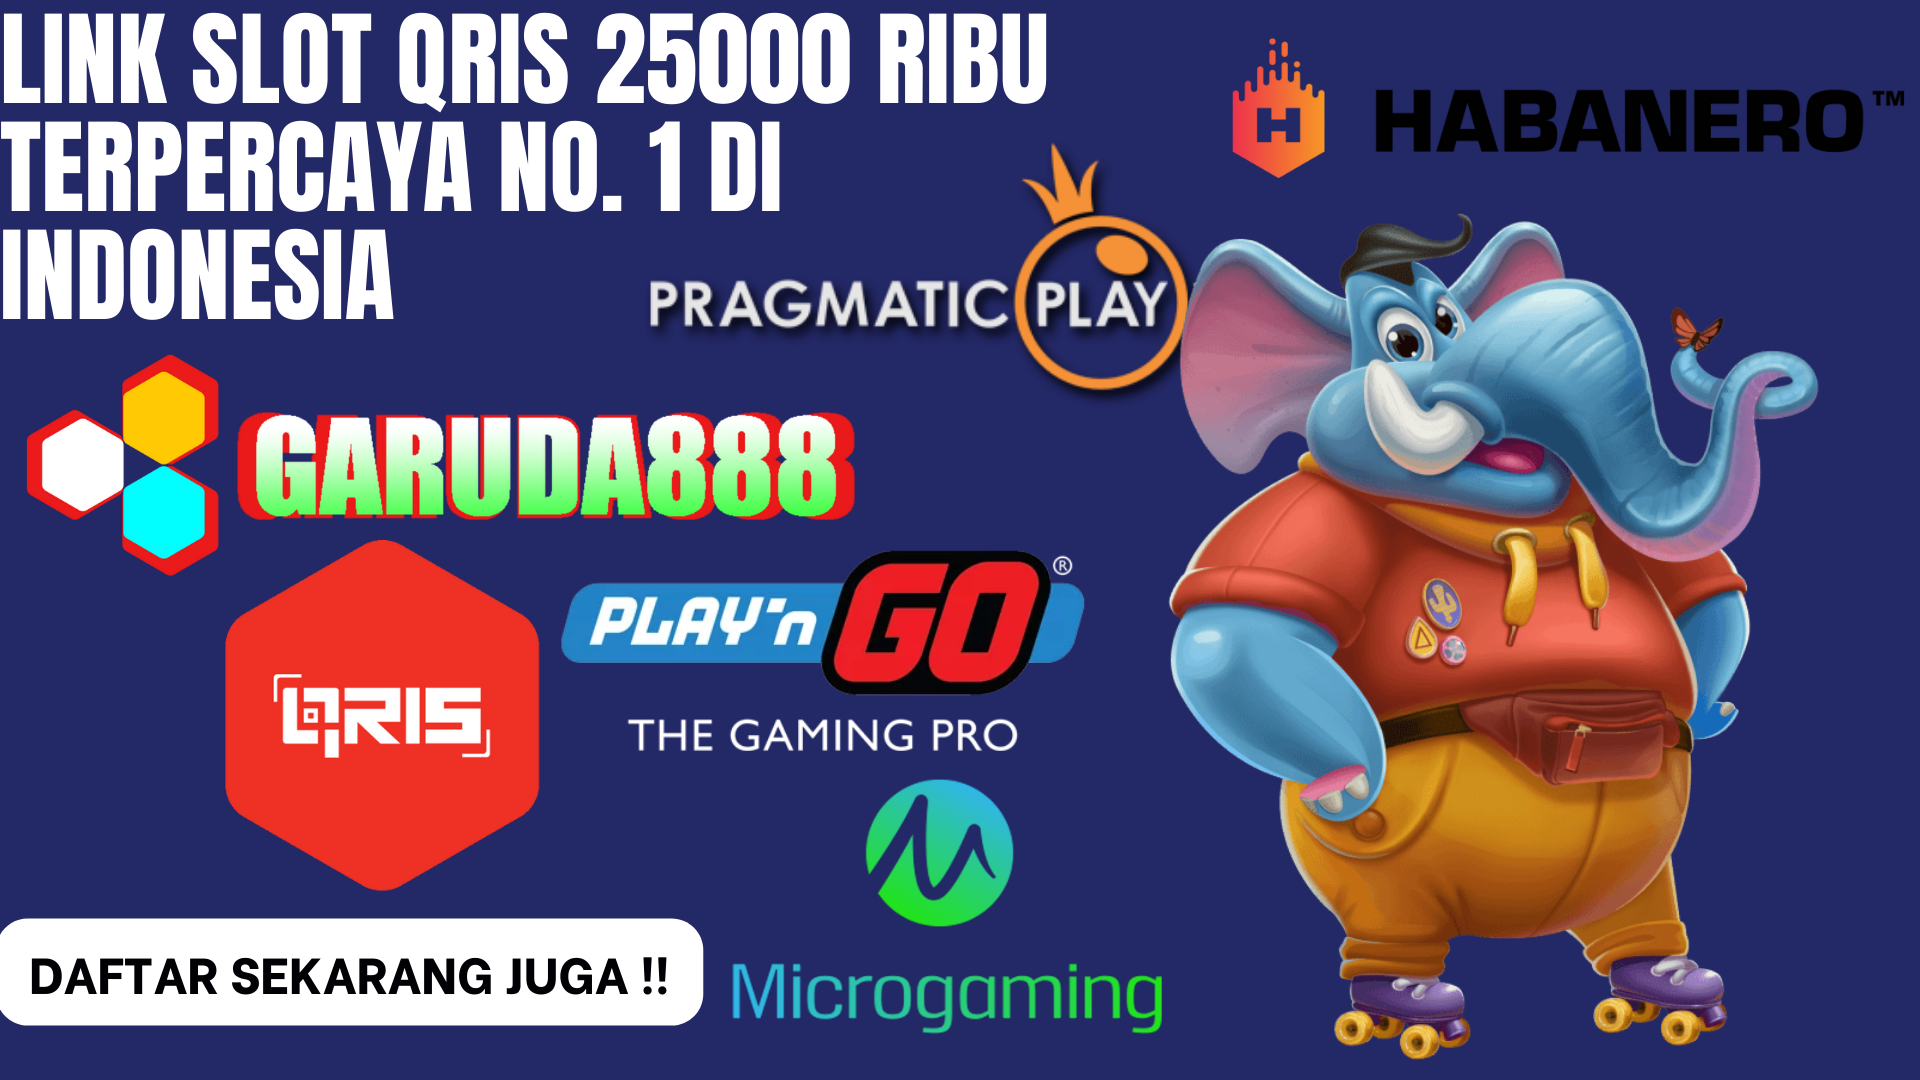 Link Slot Qris 25000 Ribu Terpercaya No. 1 Di Indonesia